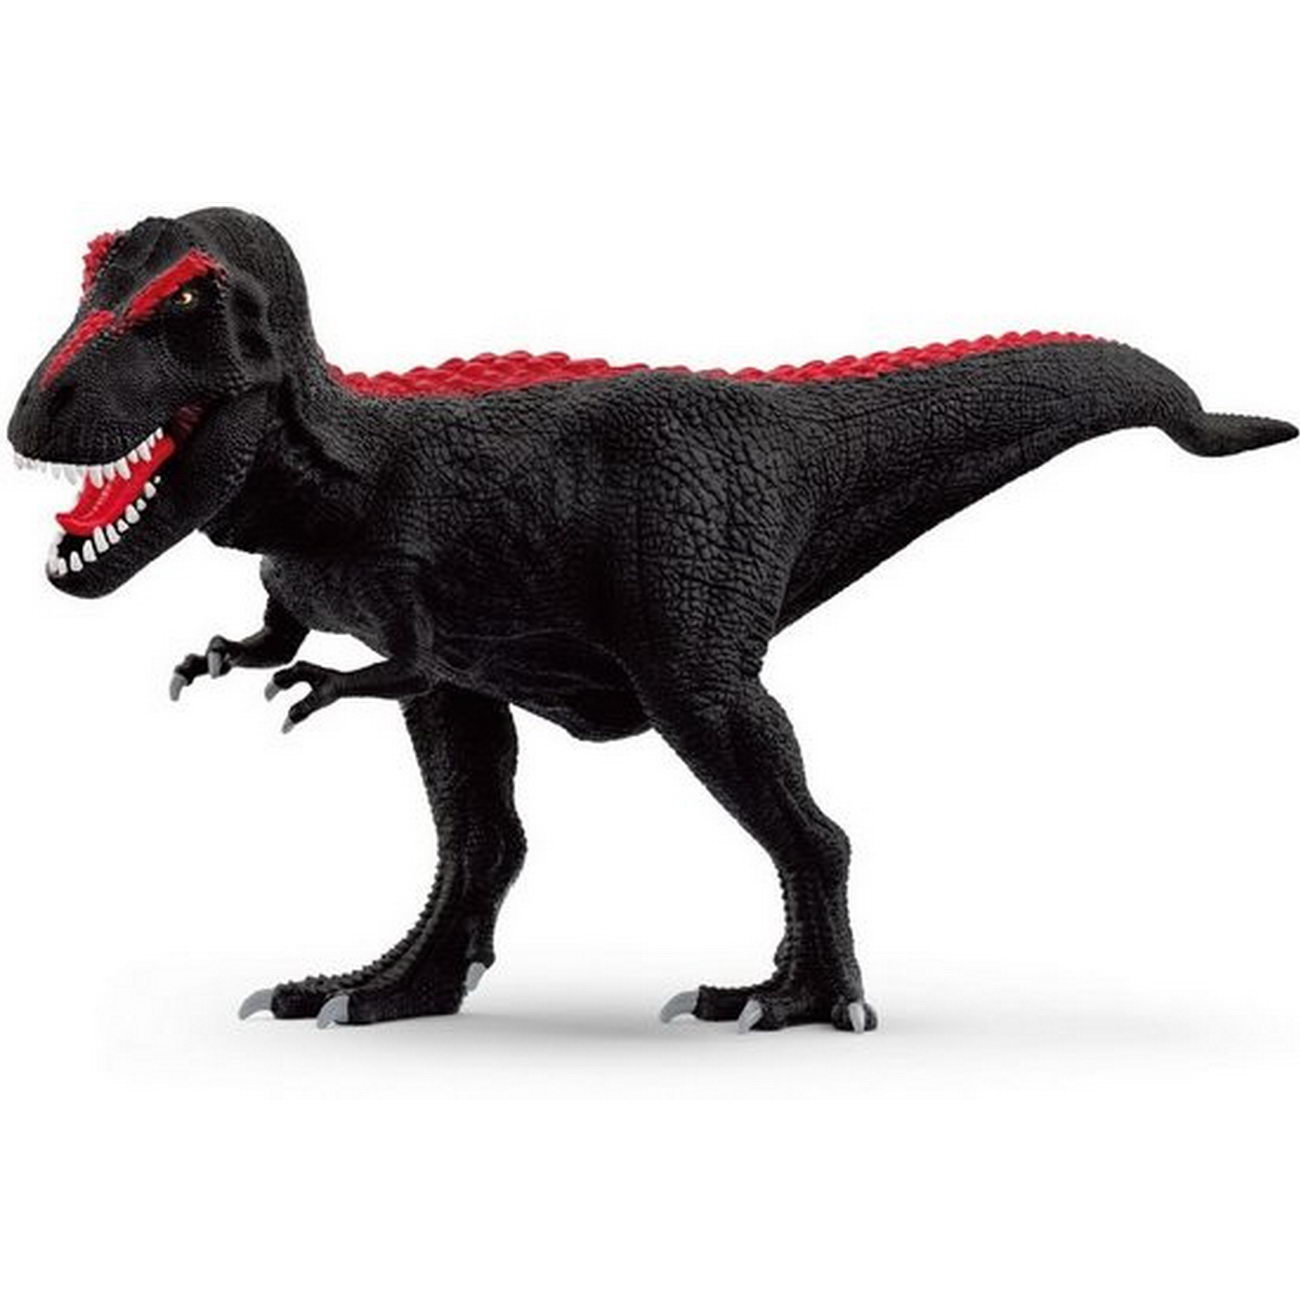 Black T-Rex schwarz rot Sonderedition 2022 - Schleich 72175 Dinosaurier